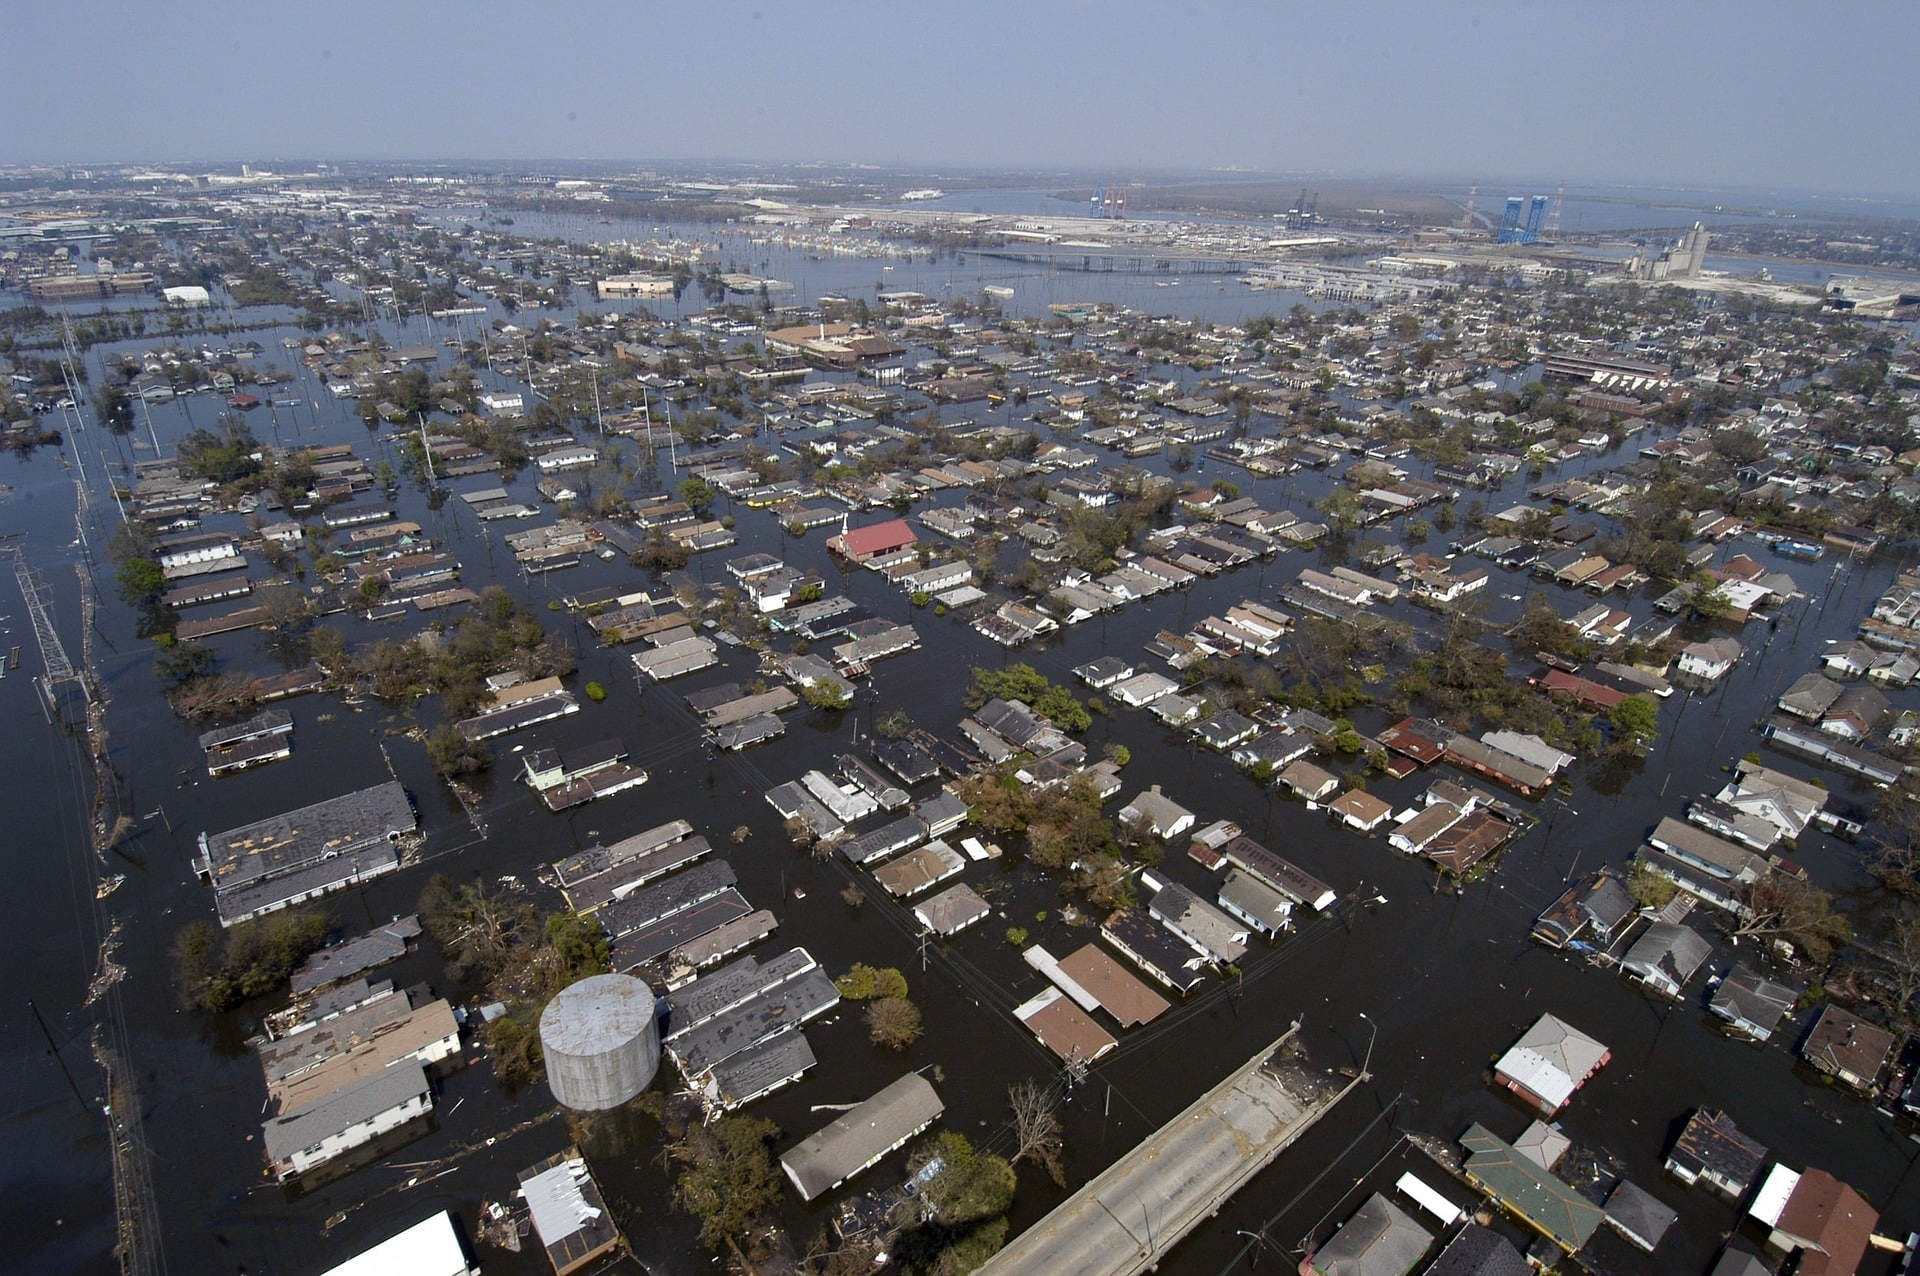 Volontariato internazionale negli USA per la ricostruzione post-uragano